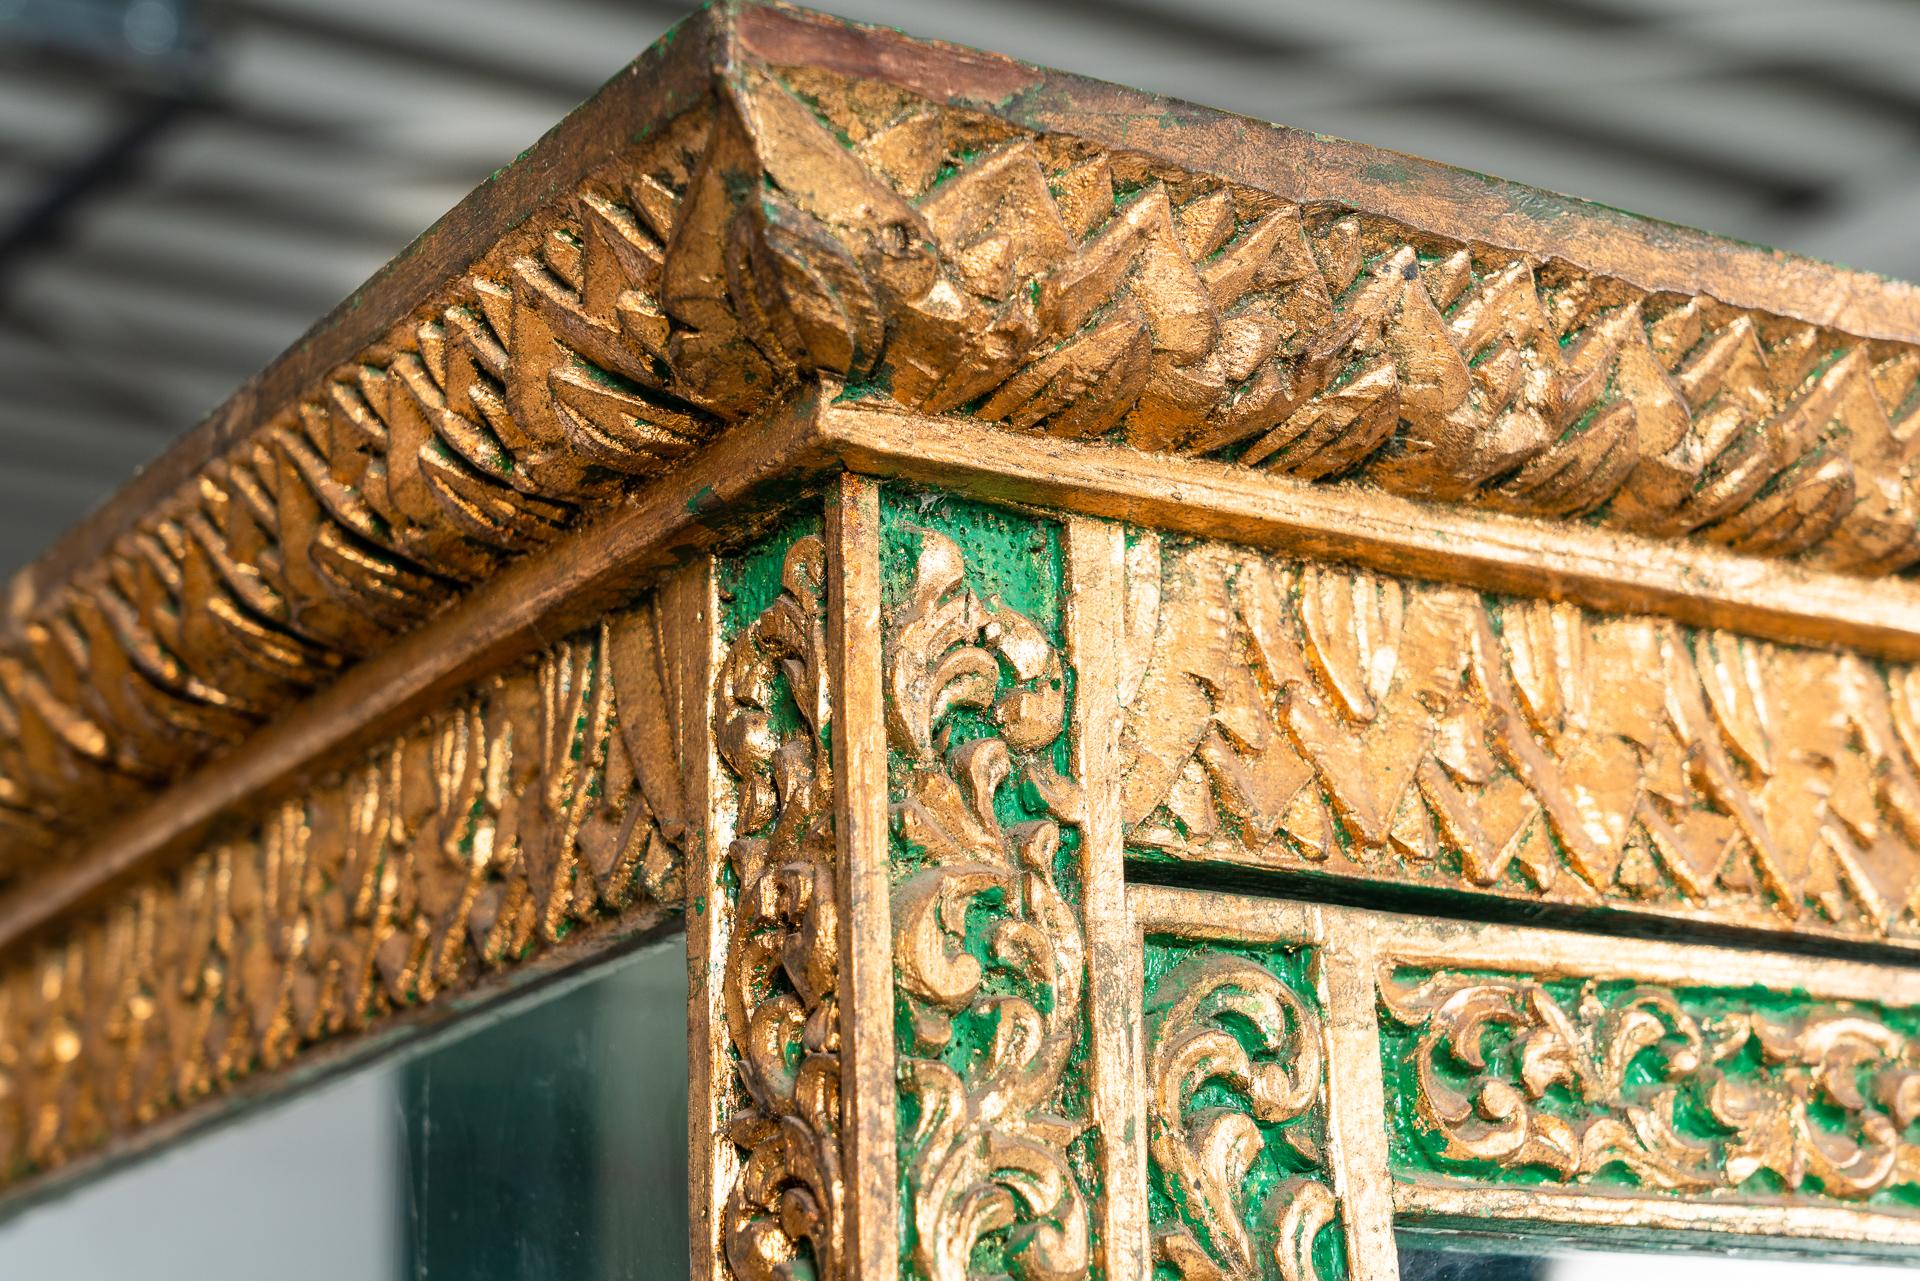 Diese 2 schönen Glasvitrinen aus Thailand sind aus handgeschnitztem Teakholz gefertigt und haben eine Basis aus antiker grüner Farbe mit goldenen Details.
Definitiv ein seltenes Paar antiker Schränke, die ihre Einzigartigkeit in dem detailliert